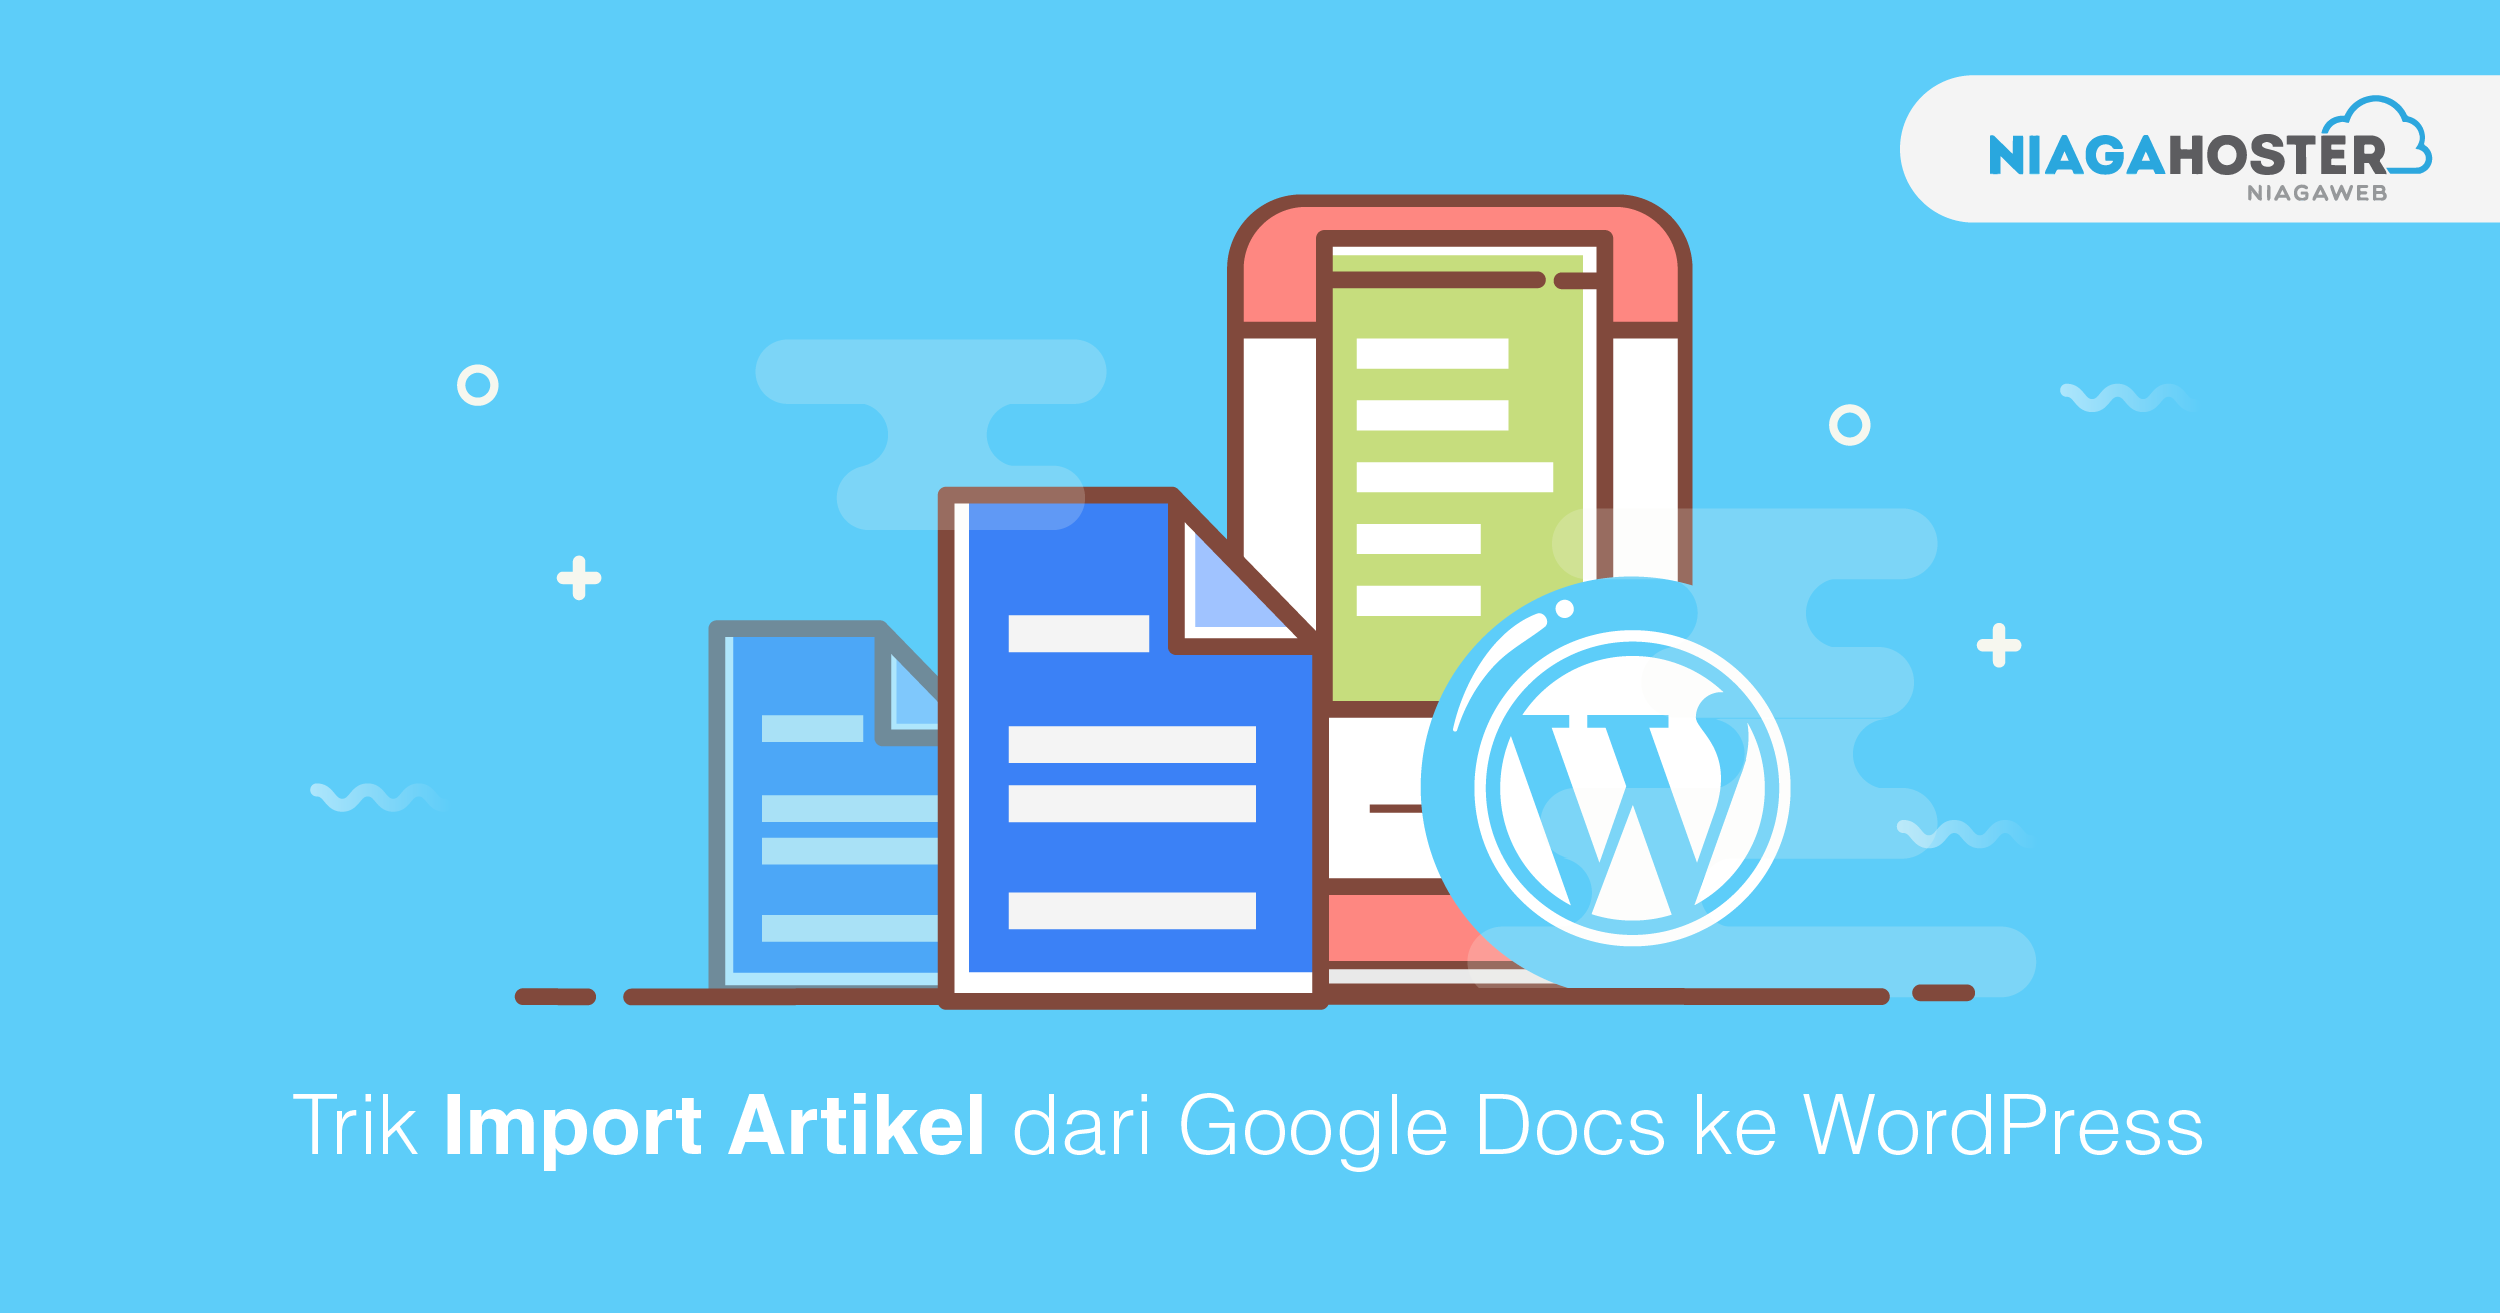 Trik Import Artikel dari Google Docs ke WordPress